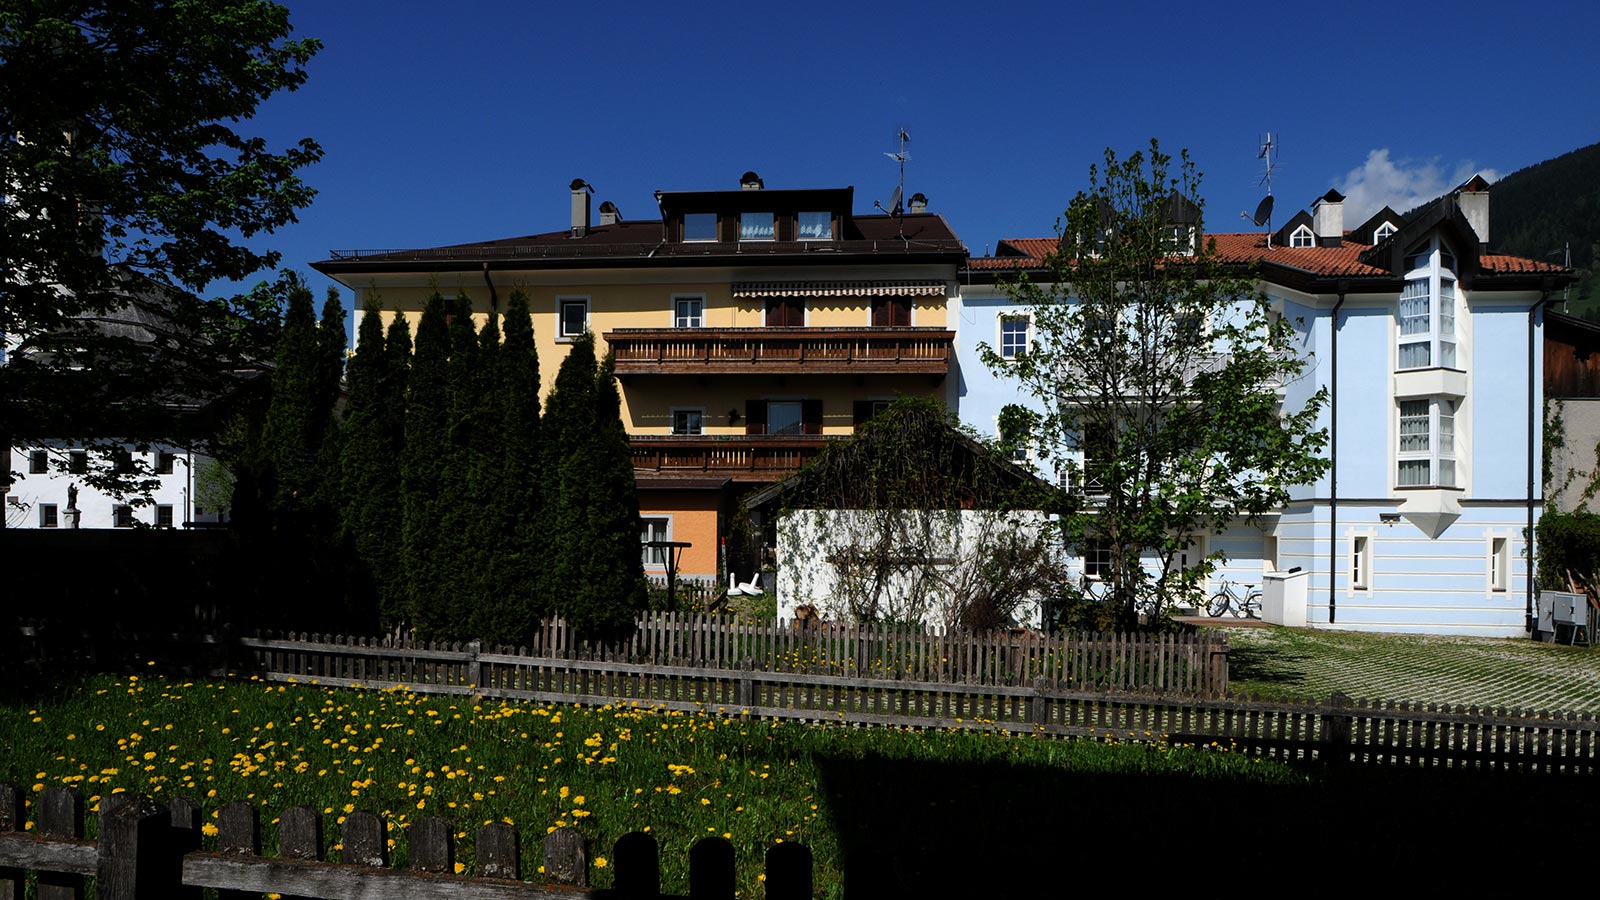 Blick aus dem Garten auf die gelben und blauen Wohnungen der Villa Christina, darunter ein mit Holzzäunen eingefasster Innenhof.